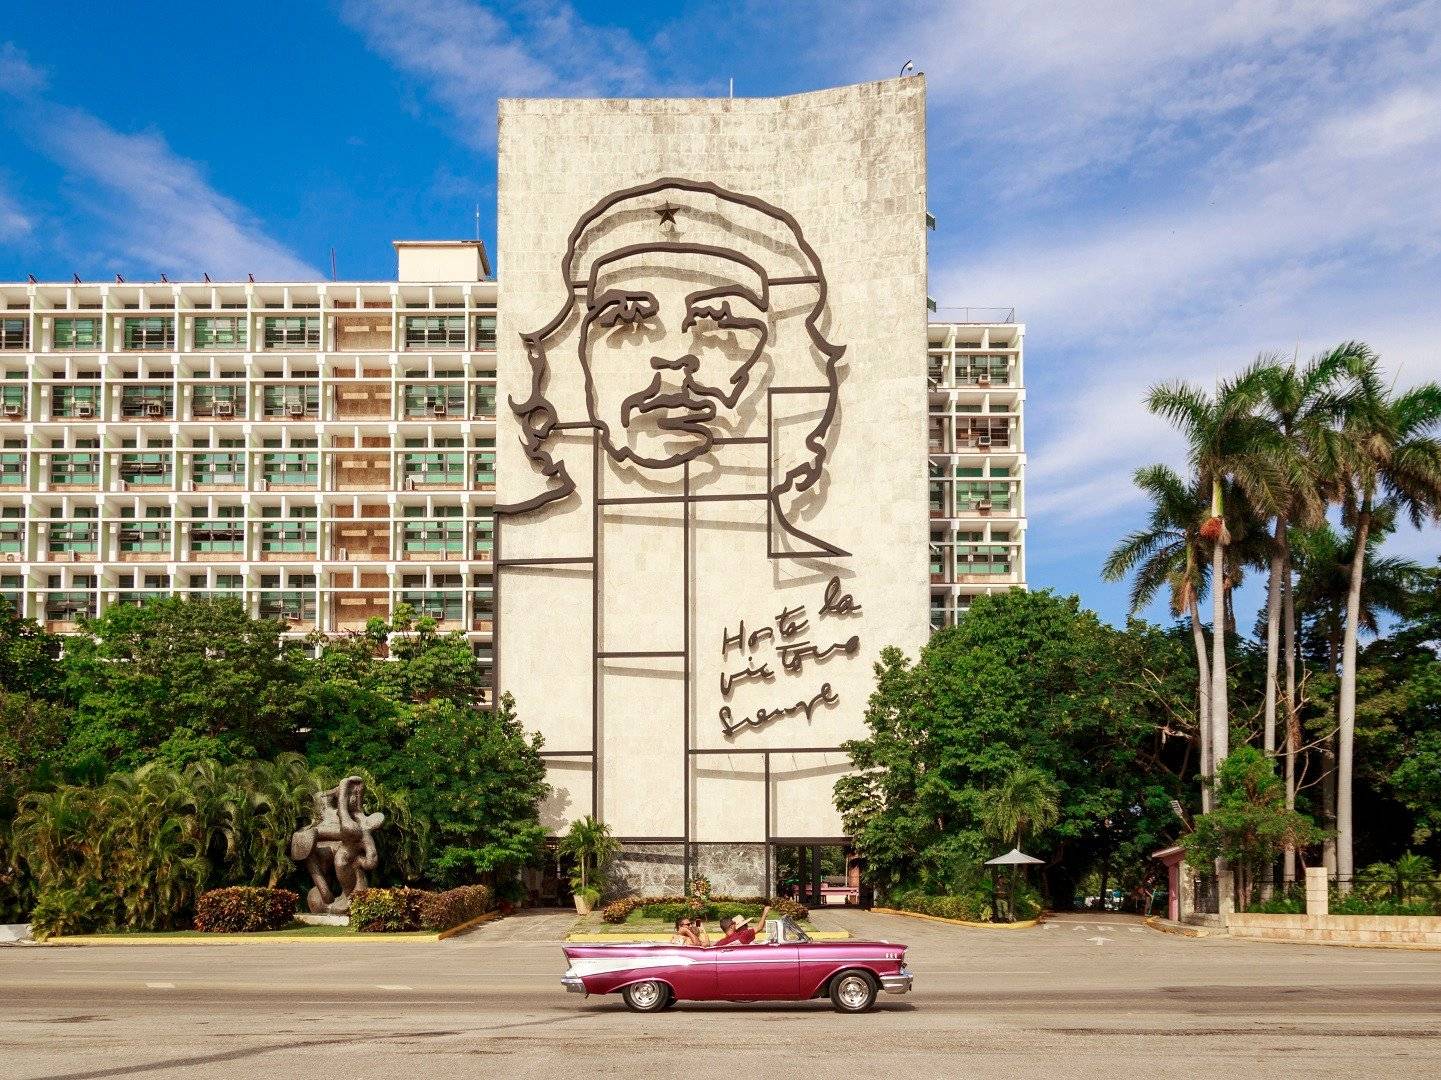 ¡Bienvenidos a La Habana!